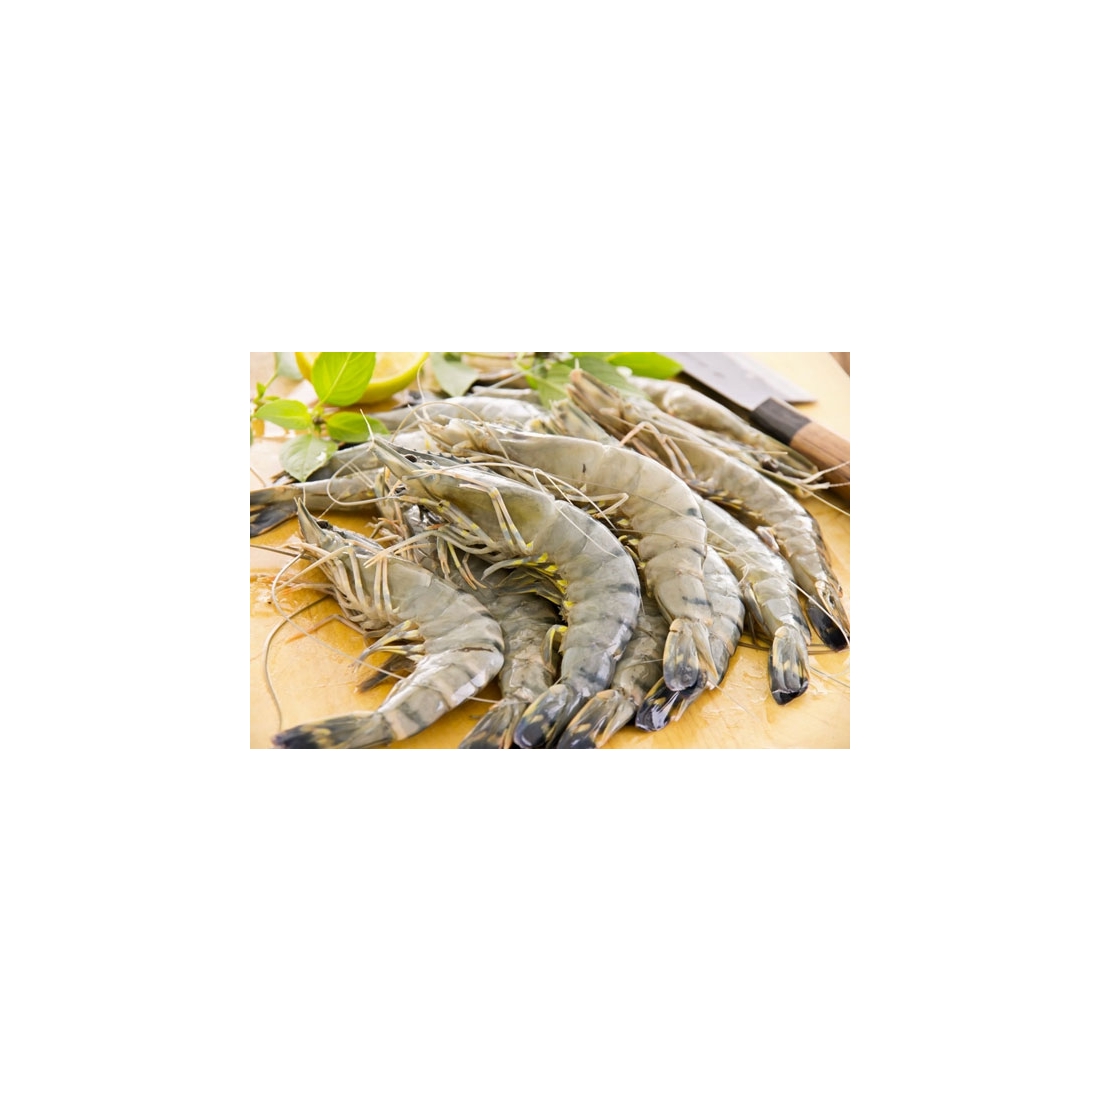 Gamberi Black Tiger per tempura: come si cucinano e le caratteristiche